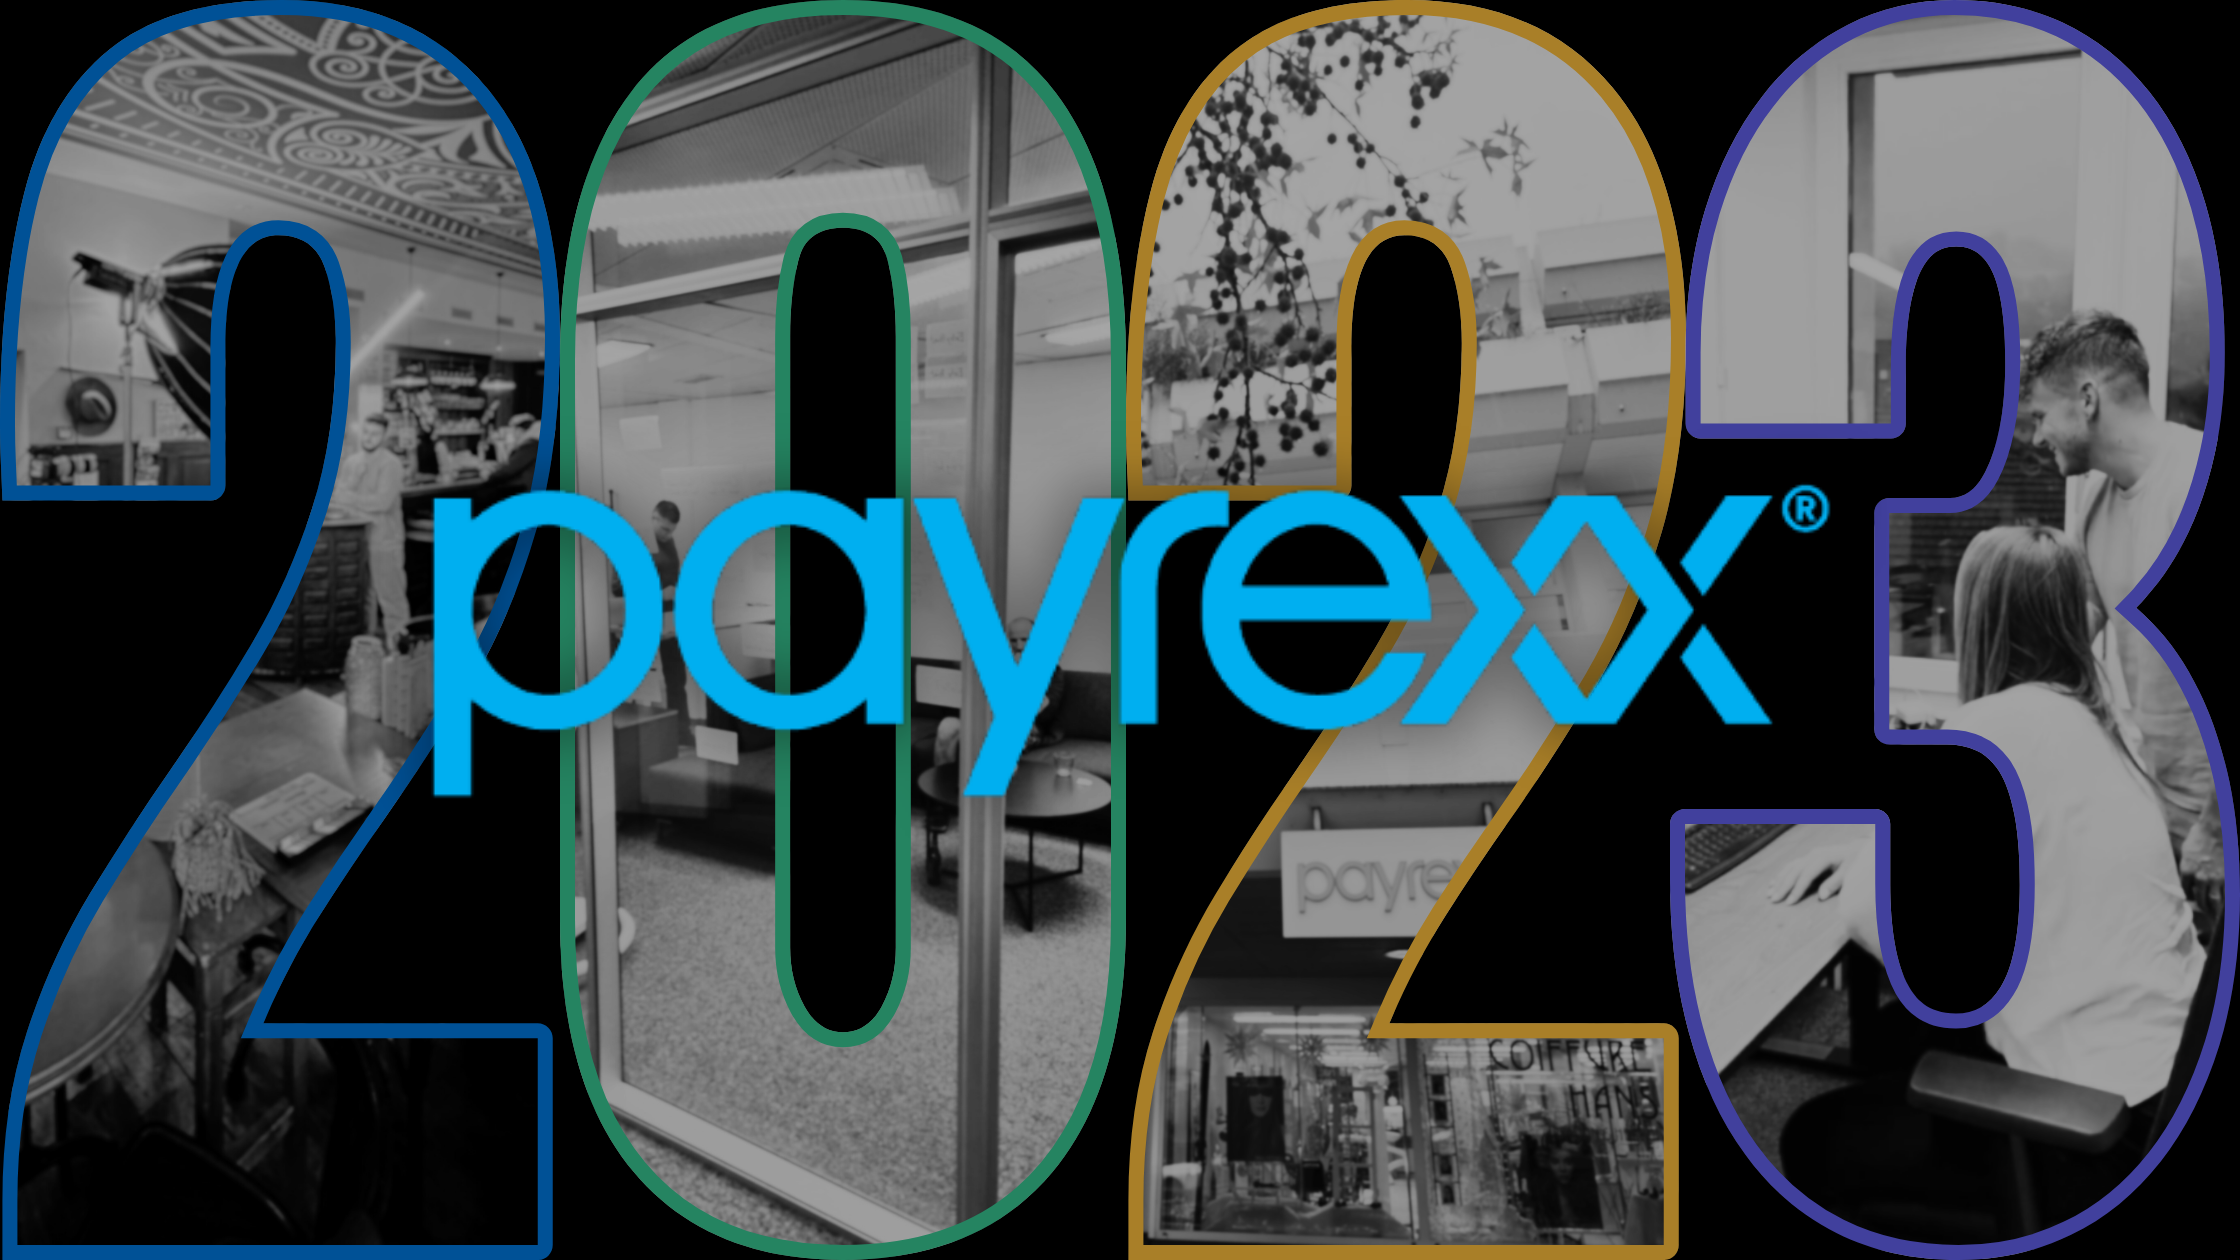 Payrexx in de lift: een veelbelovend boekjaar 2023 met groei op alle vlakken